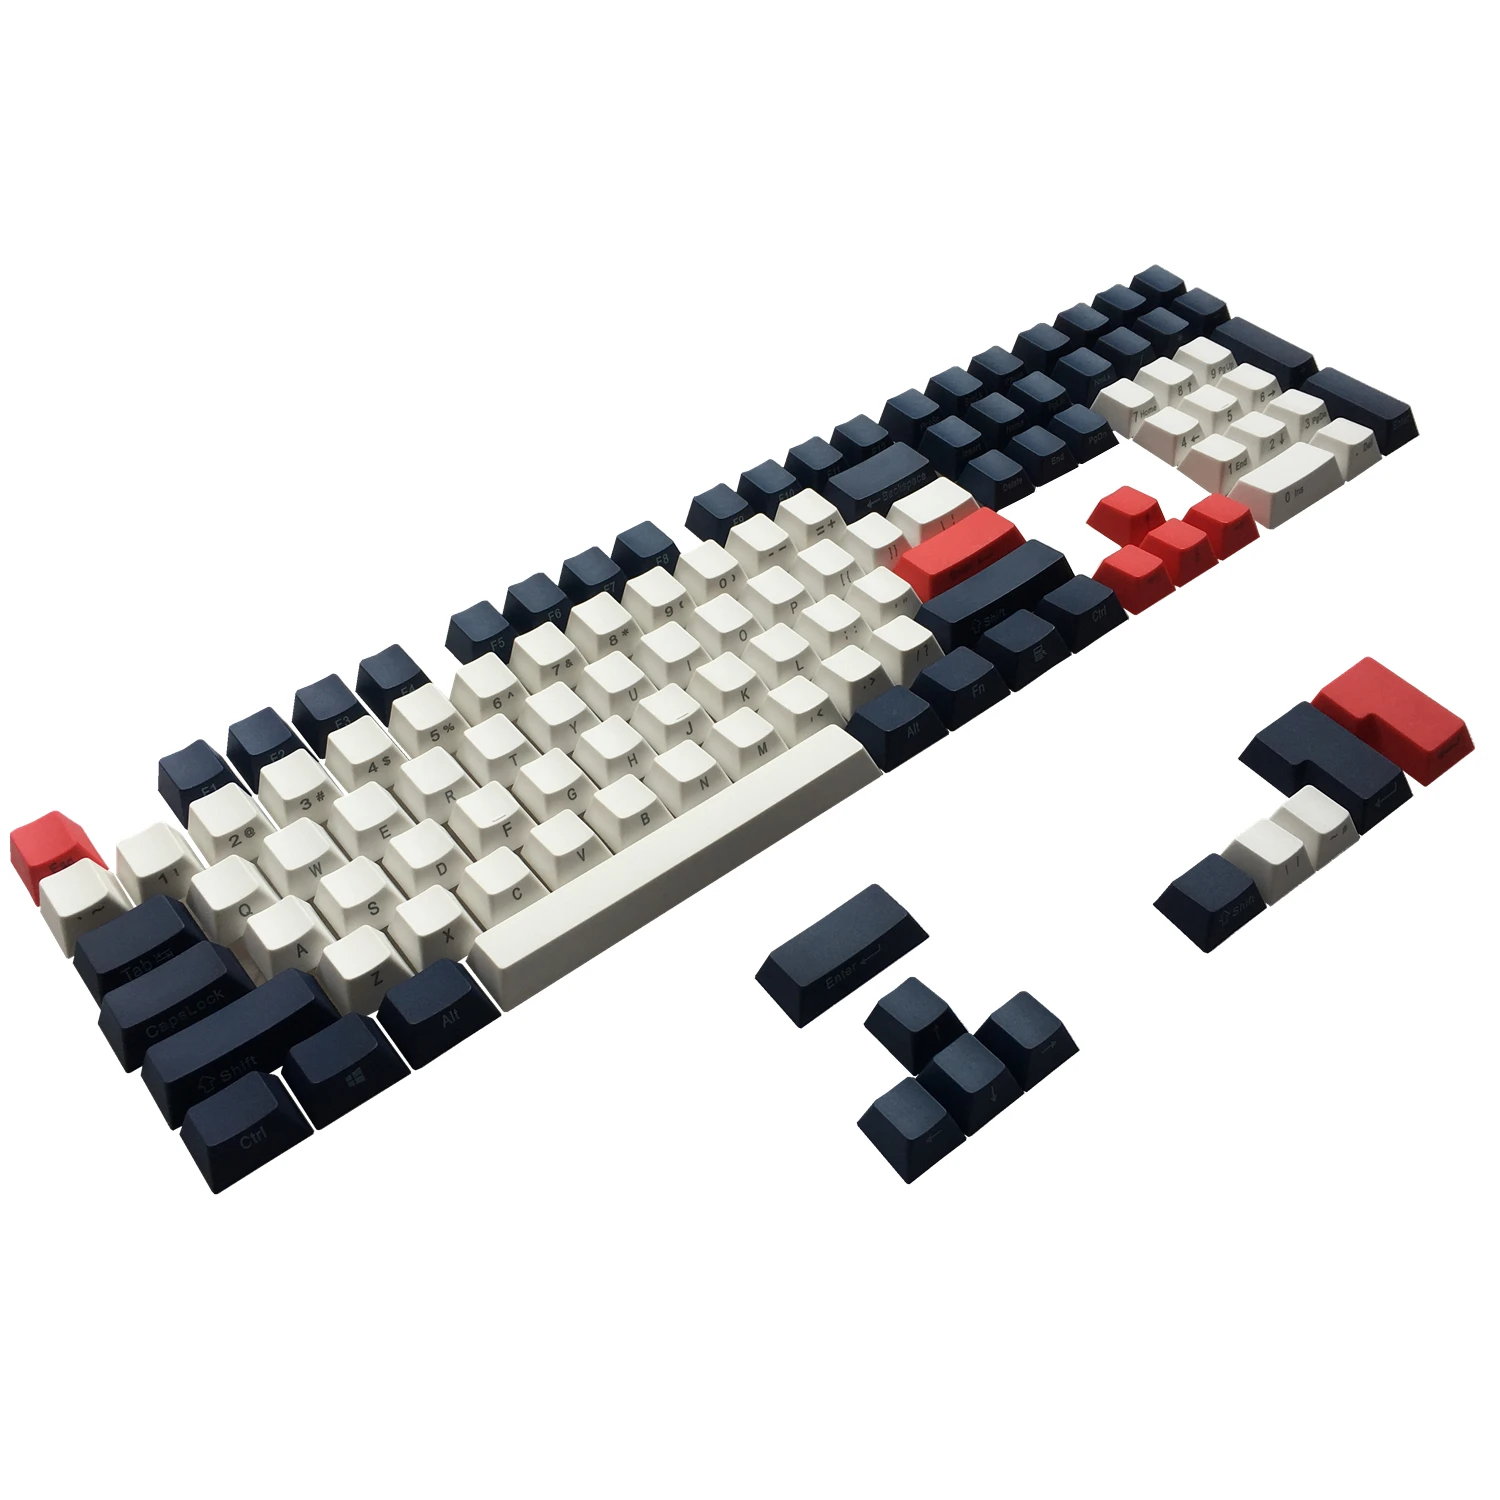 

Клавиши PBT с боковой печатью, набор клавиш ANSI ISO Cherry MX, набор клавиш темно-синего цвета для 61 68 60%/TKL 87/104/108 MX механической клавиатуры